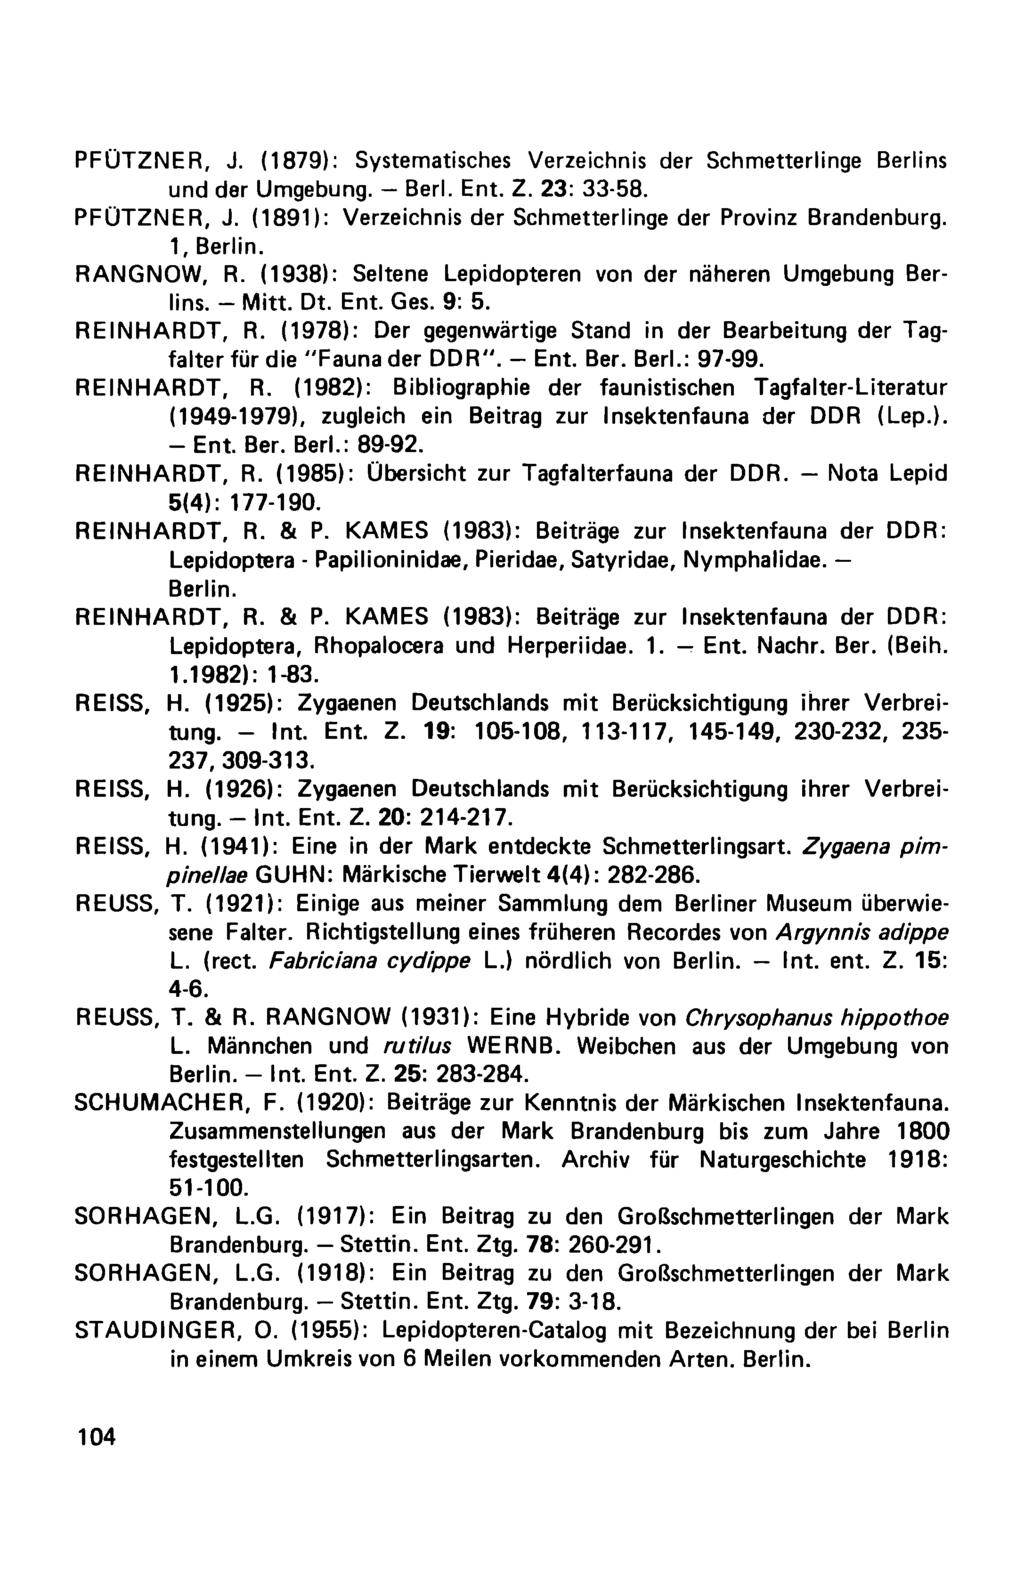 PFÜTZNER, J. (1879): Systematisches Verzeichnis der Schmetterlinge Berlins und der Umgebung. Berl. Ent. Z. 23: 33-58. PFÜTZNER, J. (1891): Verzeichnis der Schmetterlinge der Provinz Brandenburg.